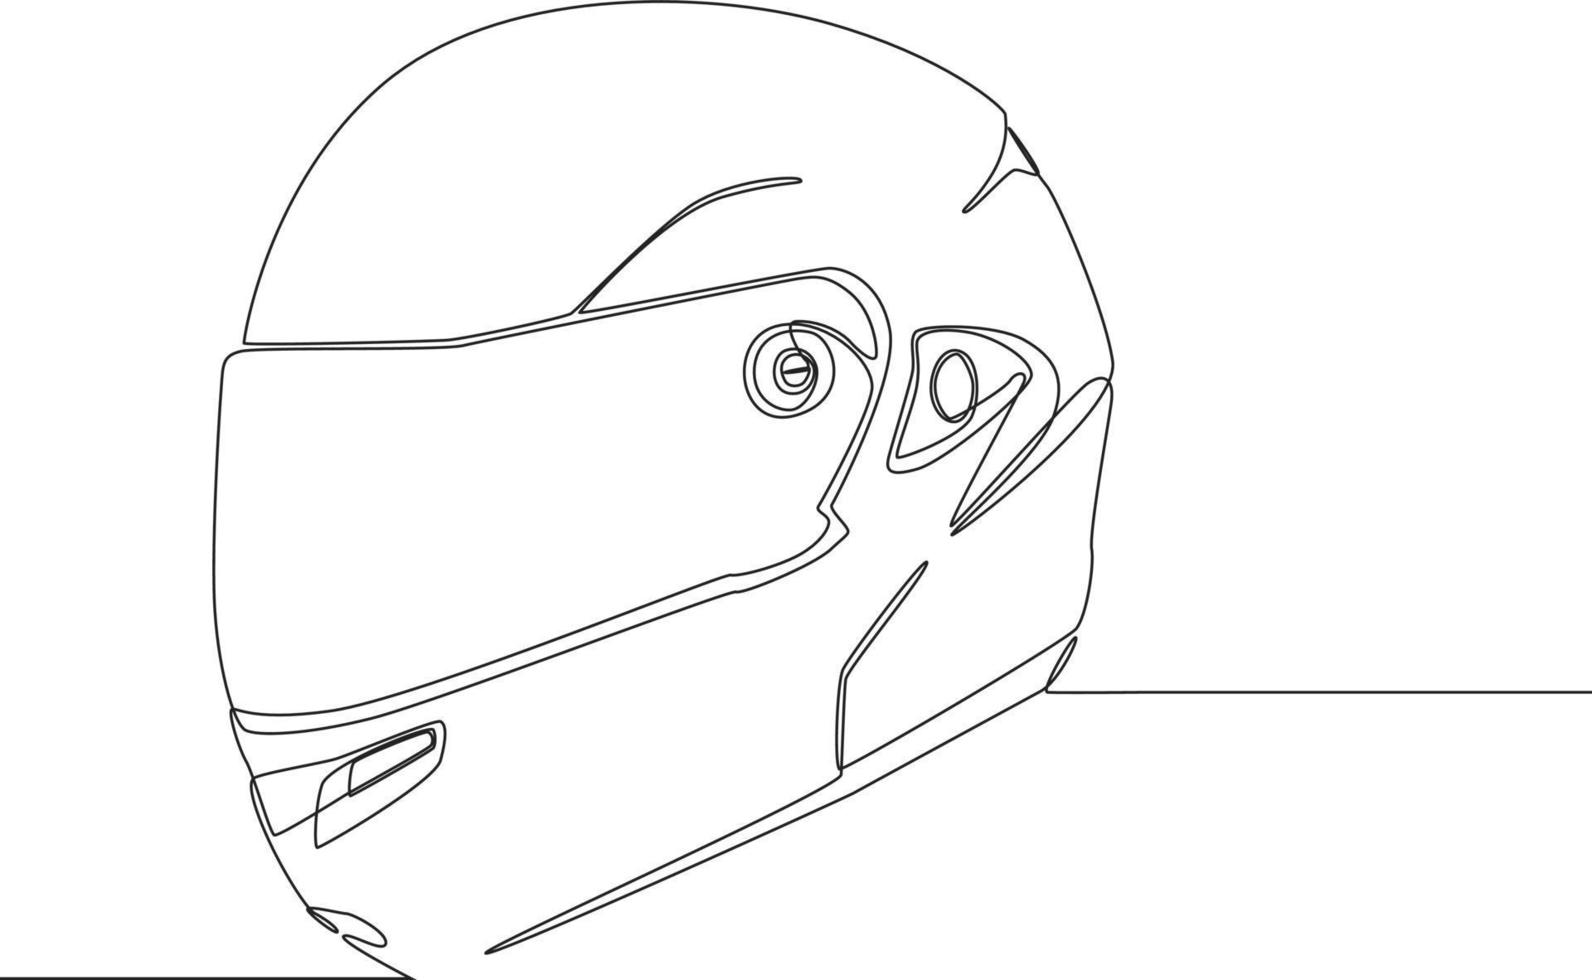 casco da moto con disegno a linea continua con tracciato di ritaglio. illustrazione grafica vettoriale di disegno a linea singola.